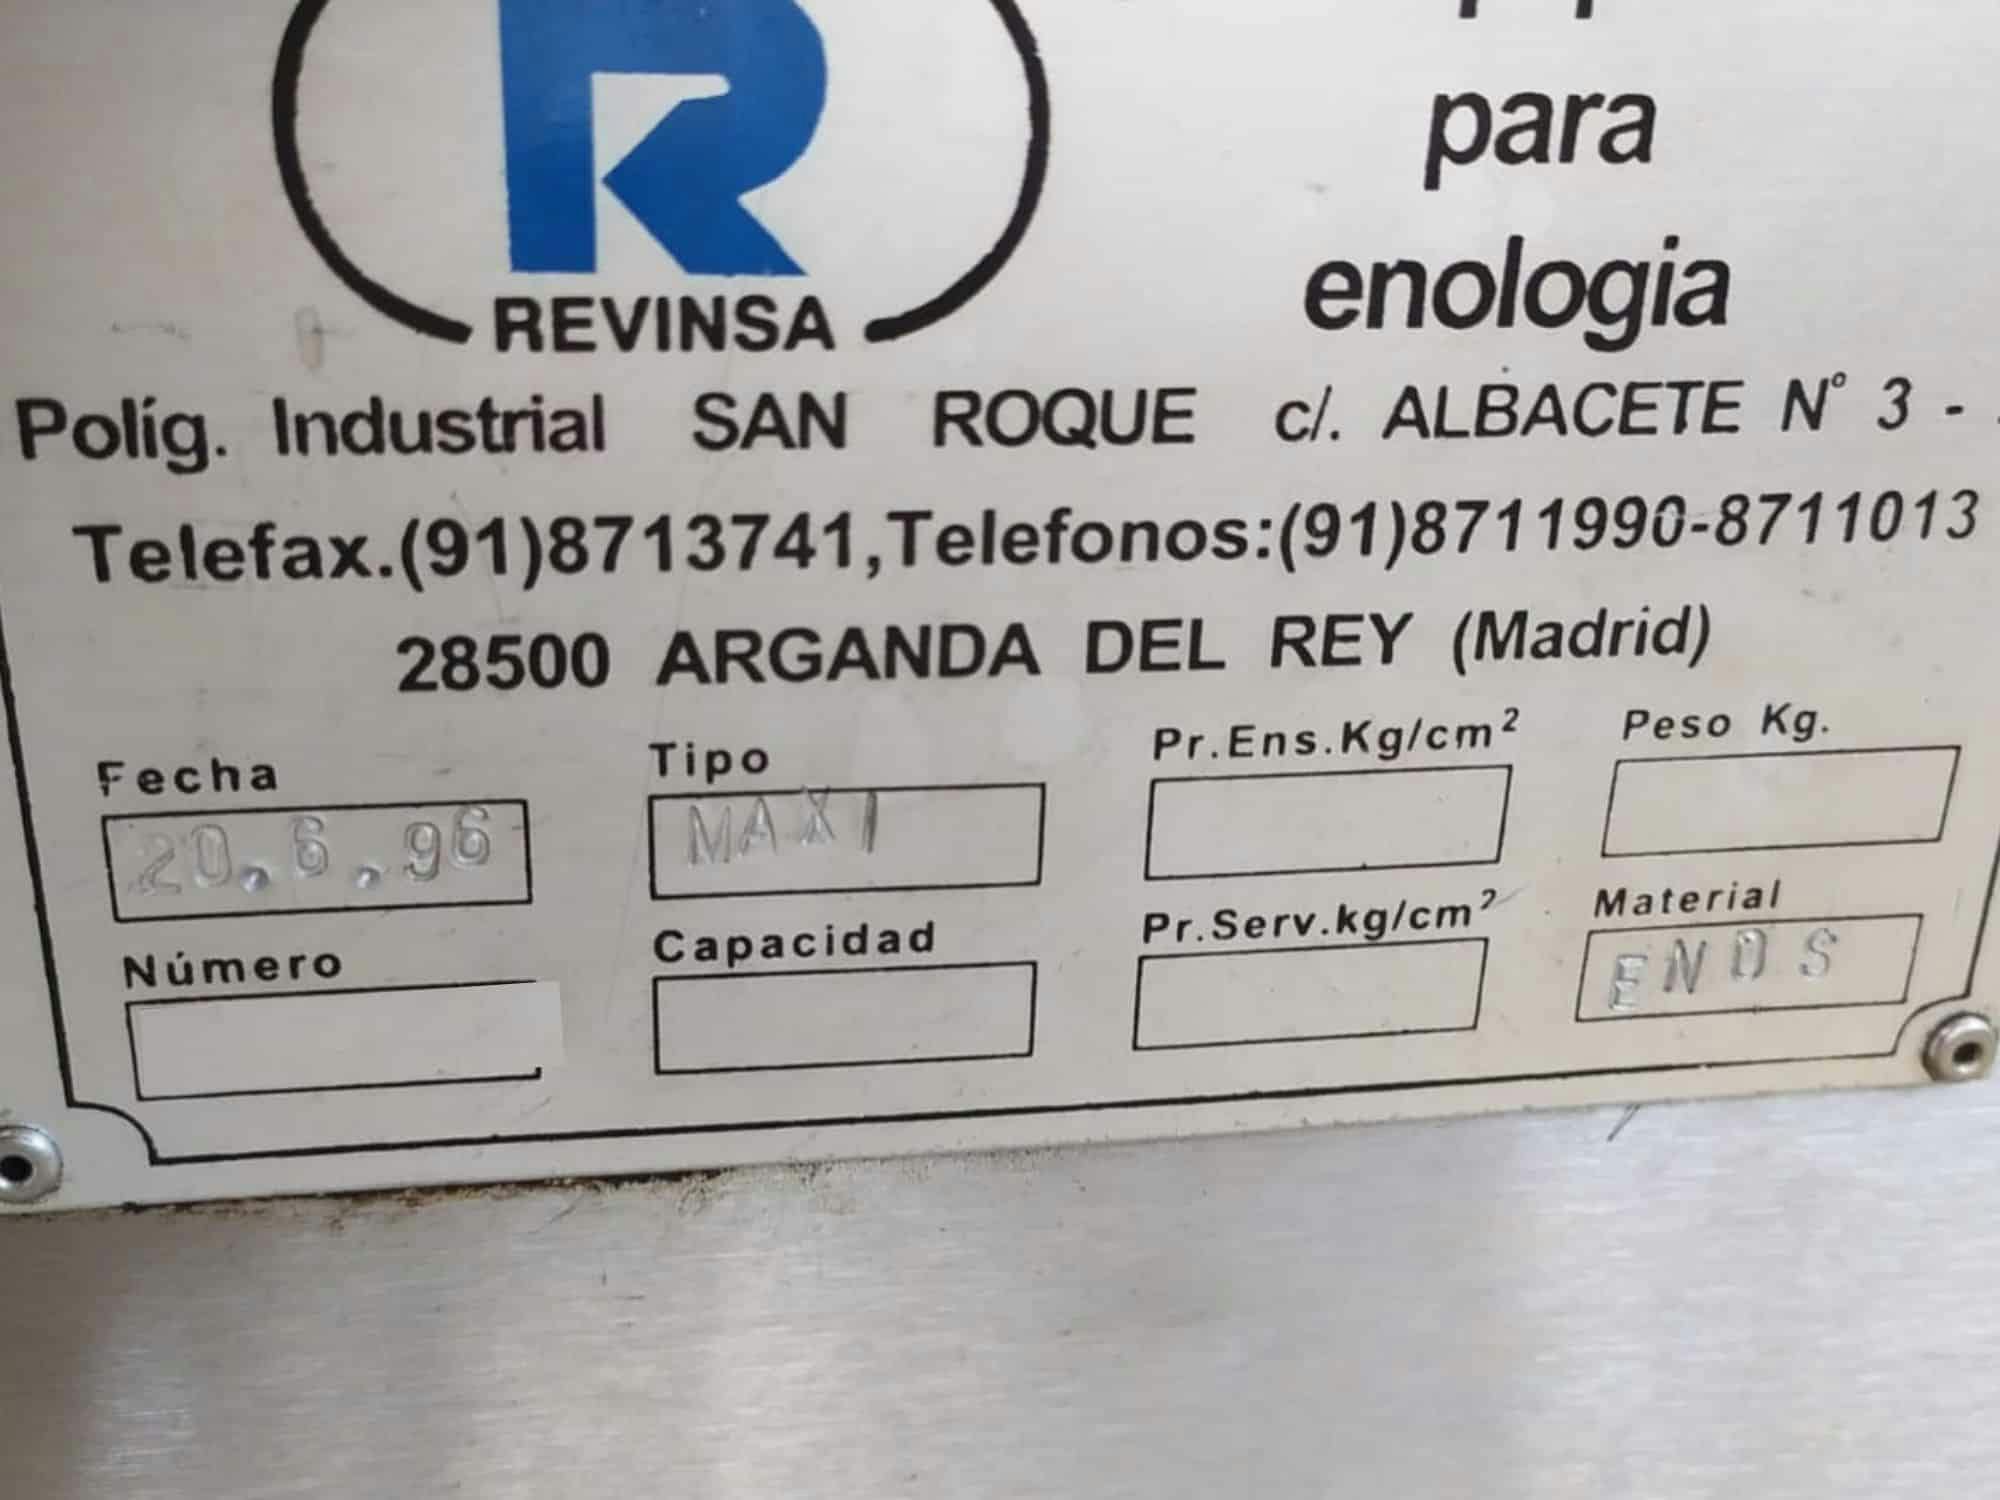 Nameplate of Revinsa Filling Line for non-returnable glass bottles